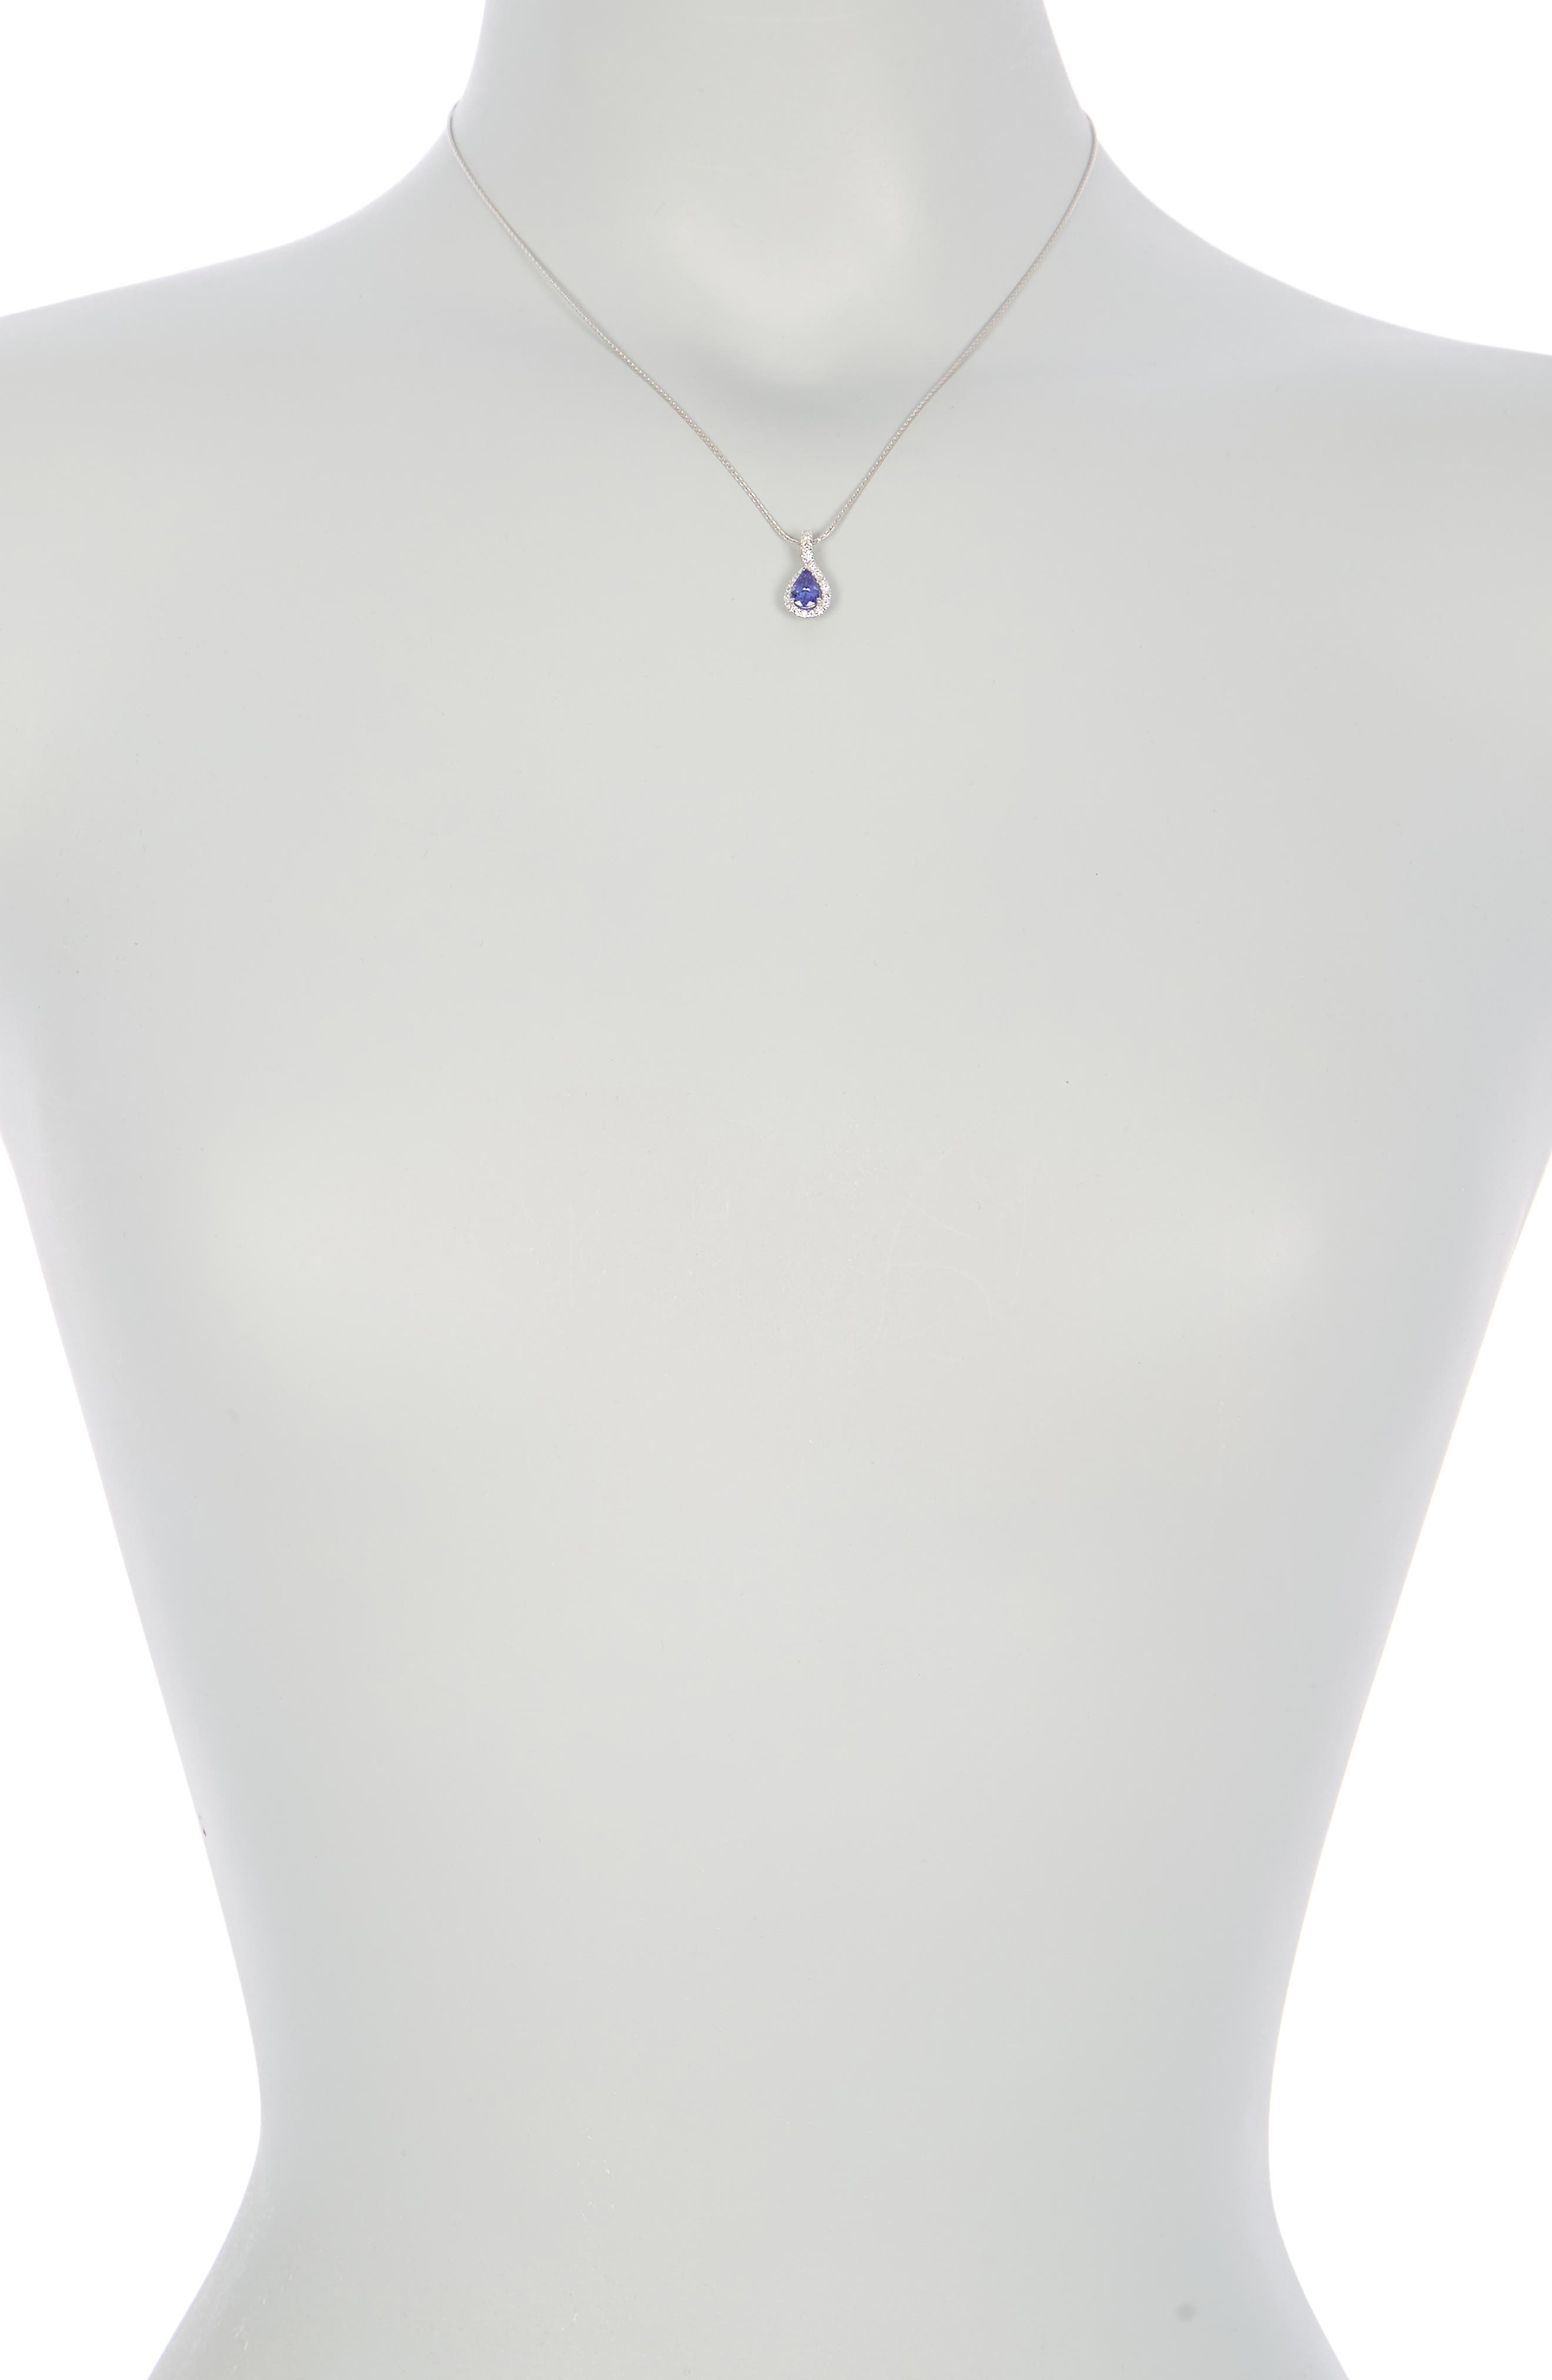 Suzy Levian 14k White Gold Pear Cut Tanzanite & Diamond Halo Pendant Necklace In Blue